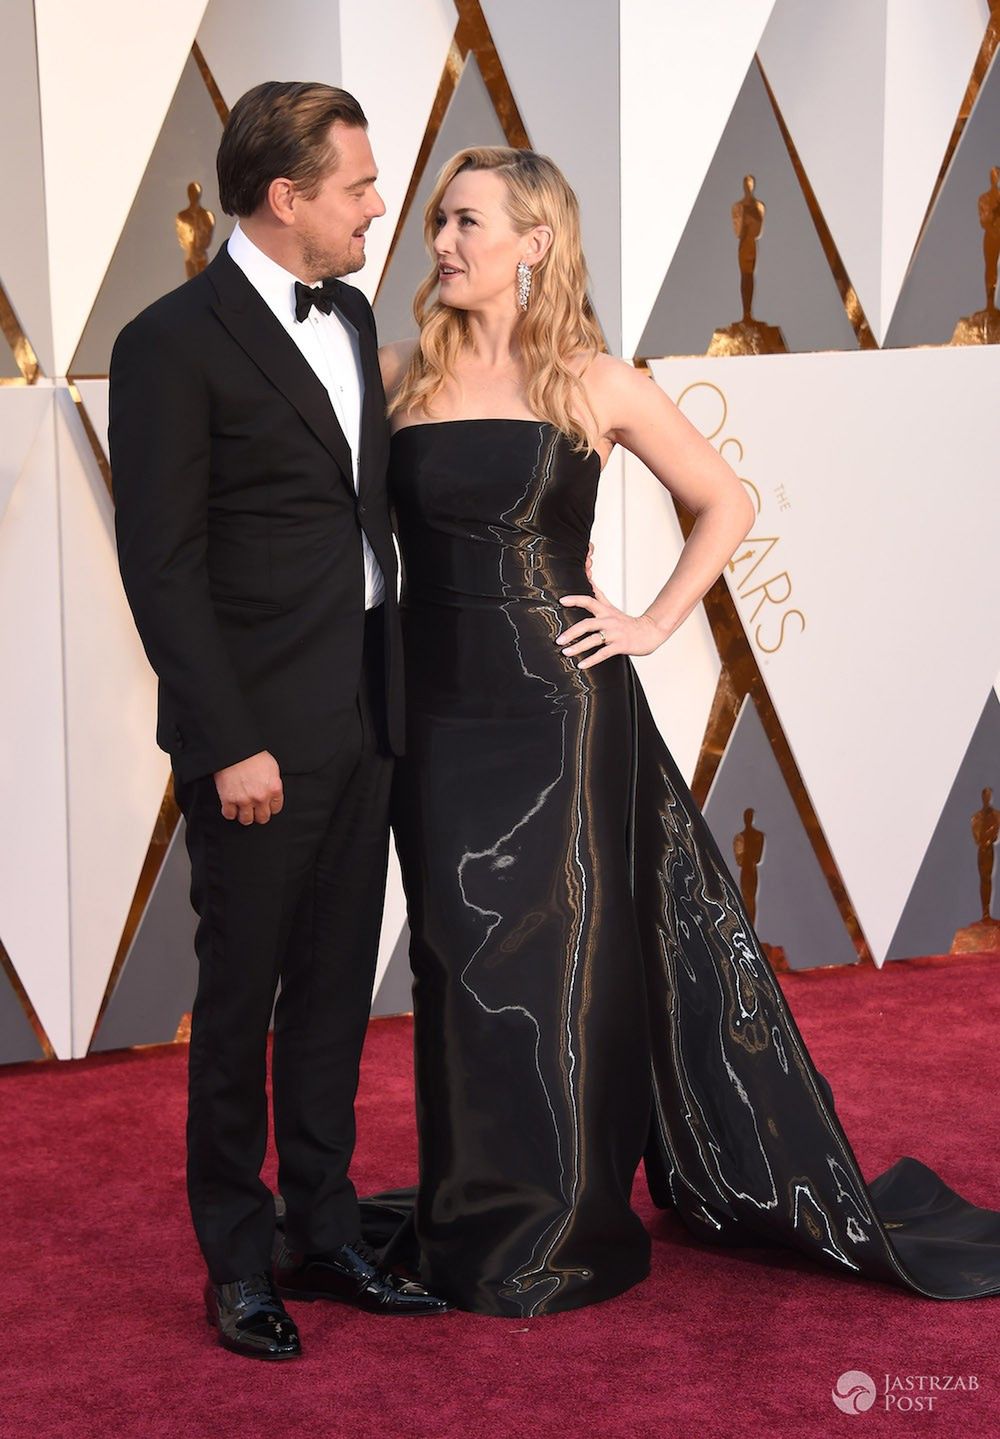 Kate Winslet i Leonardo DiCaprio są parą w życiu prywatnym?